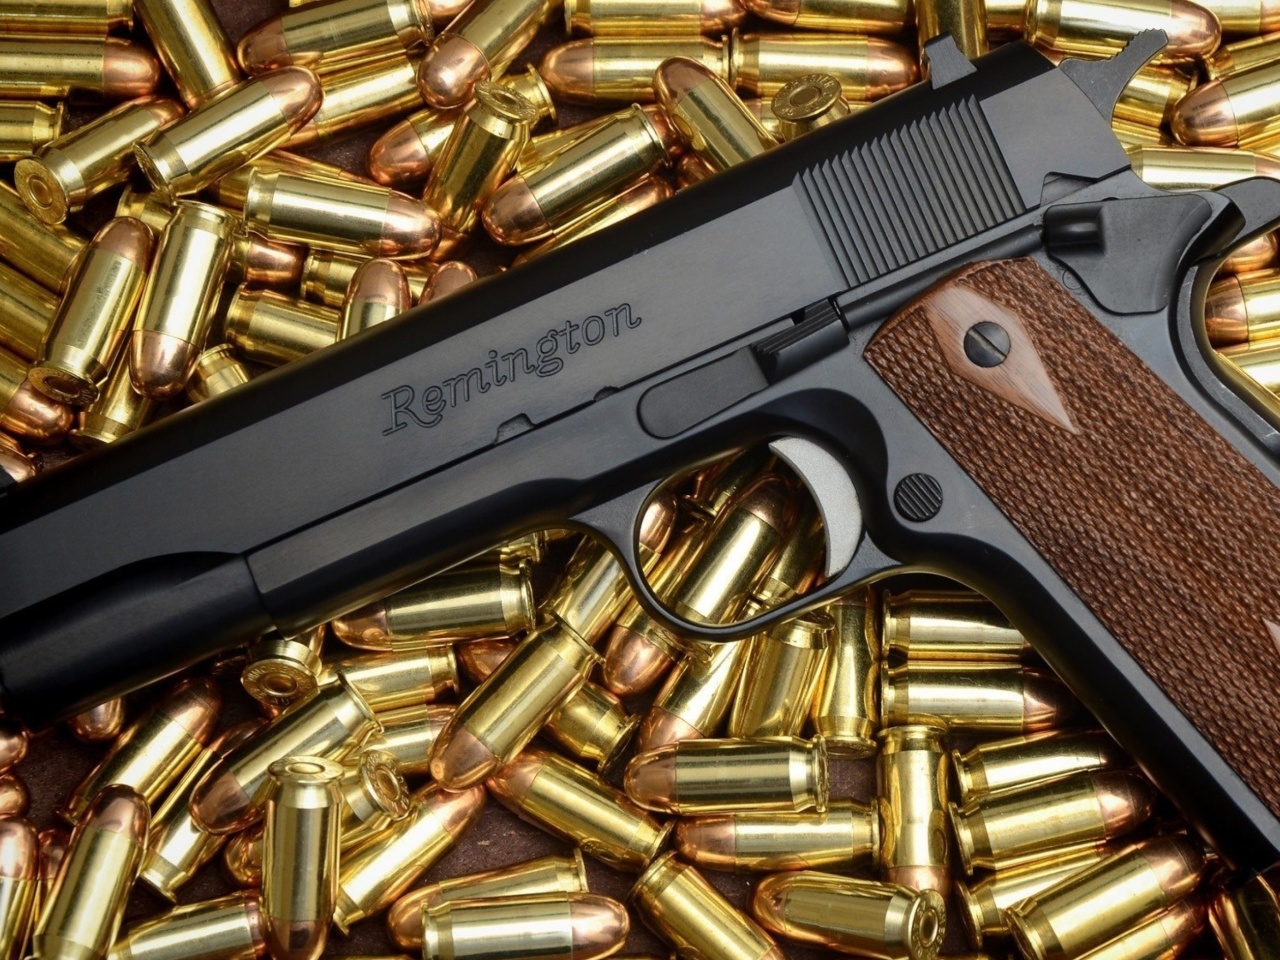 Pistol Remington wallpaper 1280x960